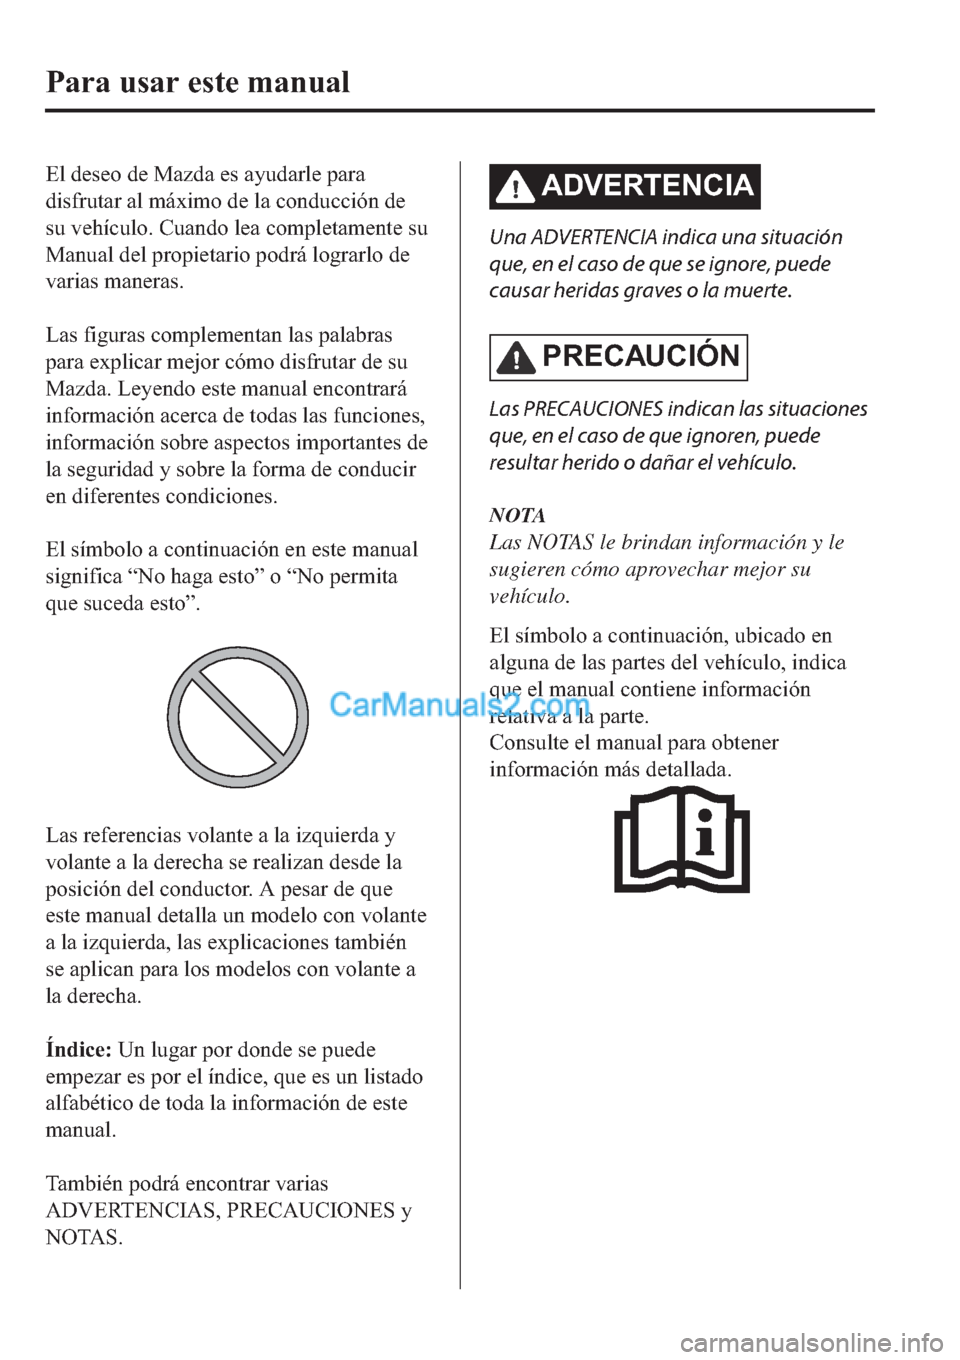 MAZDA MODEL 2 2019  Manual del propietario (in Spanish) �(�O��G�H�V�H�R��G�H��0�D�]�G�D��H�V��D�\�X�G�D�U�O�H��S�D�U�D
�G�L�V�I�U�X�W�D�U��D�O��P�i�[�L�P�R��G�H��O�D��F�R�Q�G�X�F�F�L�y�Q��G�H
�V�X��Y�H�K�t�F�X�O�R���&�X�D�Q�G�R��O�H�D��F�R